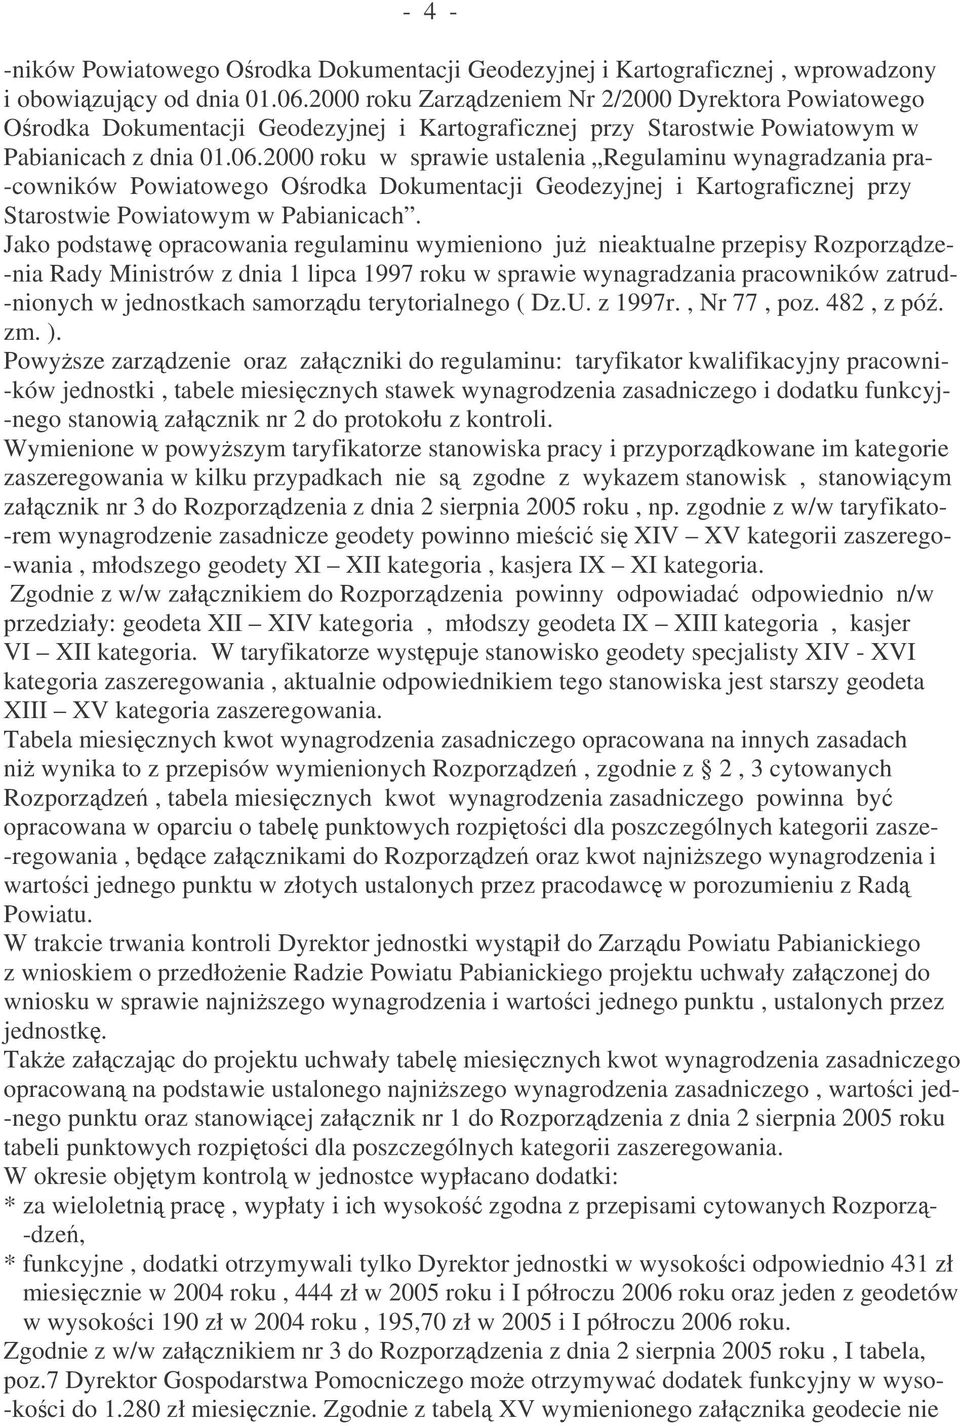 2000 roku w sprawie ustalenia Regulaminu wynagradzania pra- -cowników Powiatowego Orodka Dokumentacji Geodezyjnej i Kartograficznej przy Starostwie Powiatowym w Pabianicach.